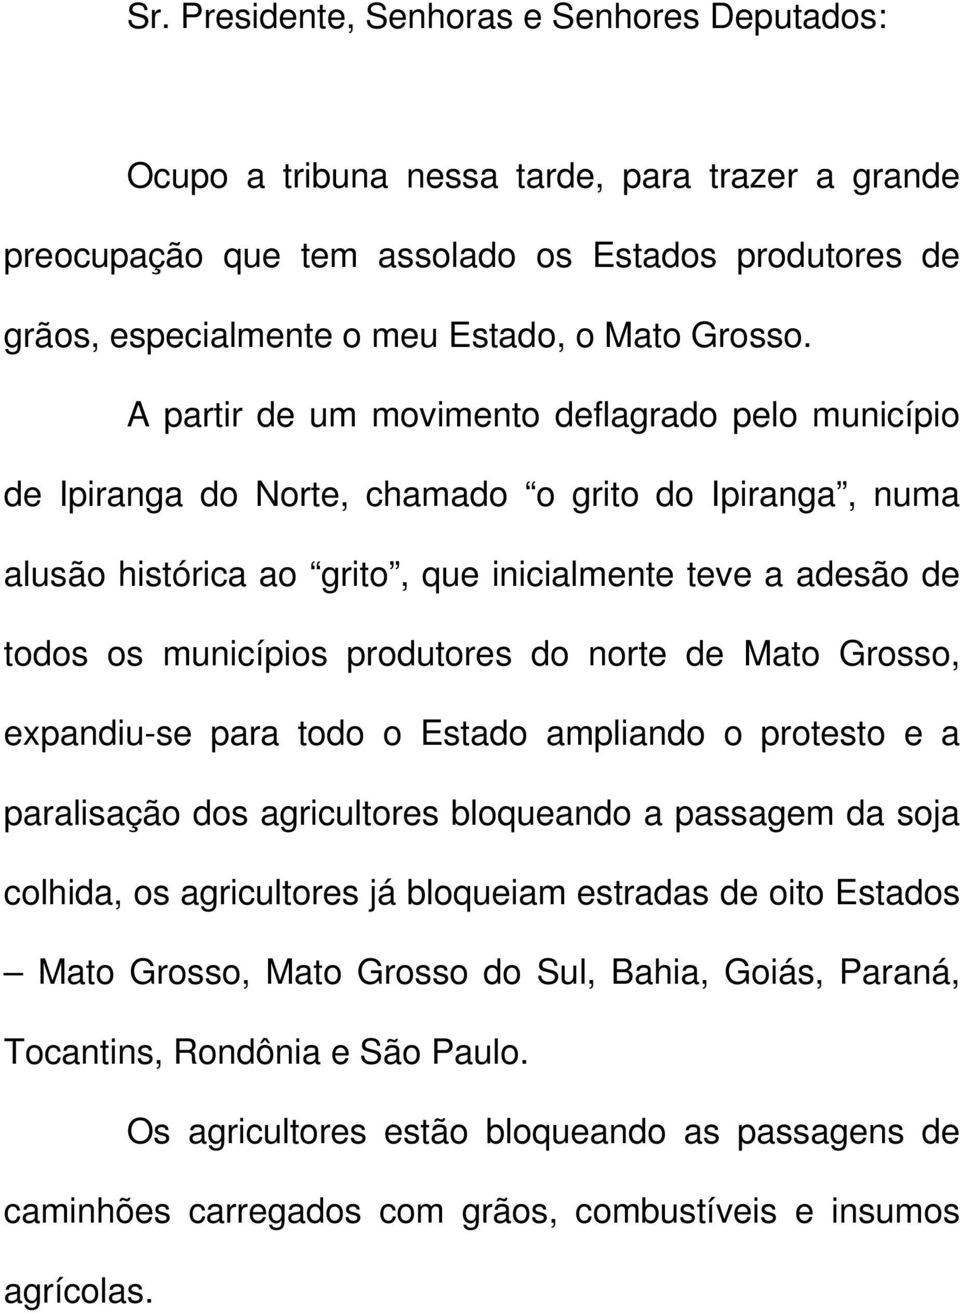 do norte de Mato Grosso, expandiu-se para todo o Estado ampliando o protesto e a paralisação dos agricultores bloqueando a passagem da soja colhida, os agricultores já bloqueiam estradas de oito